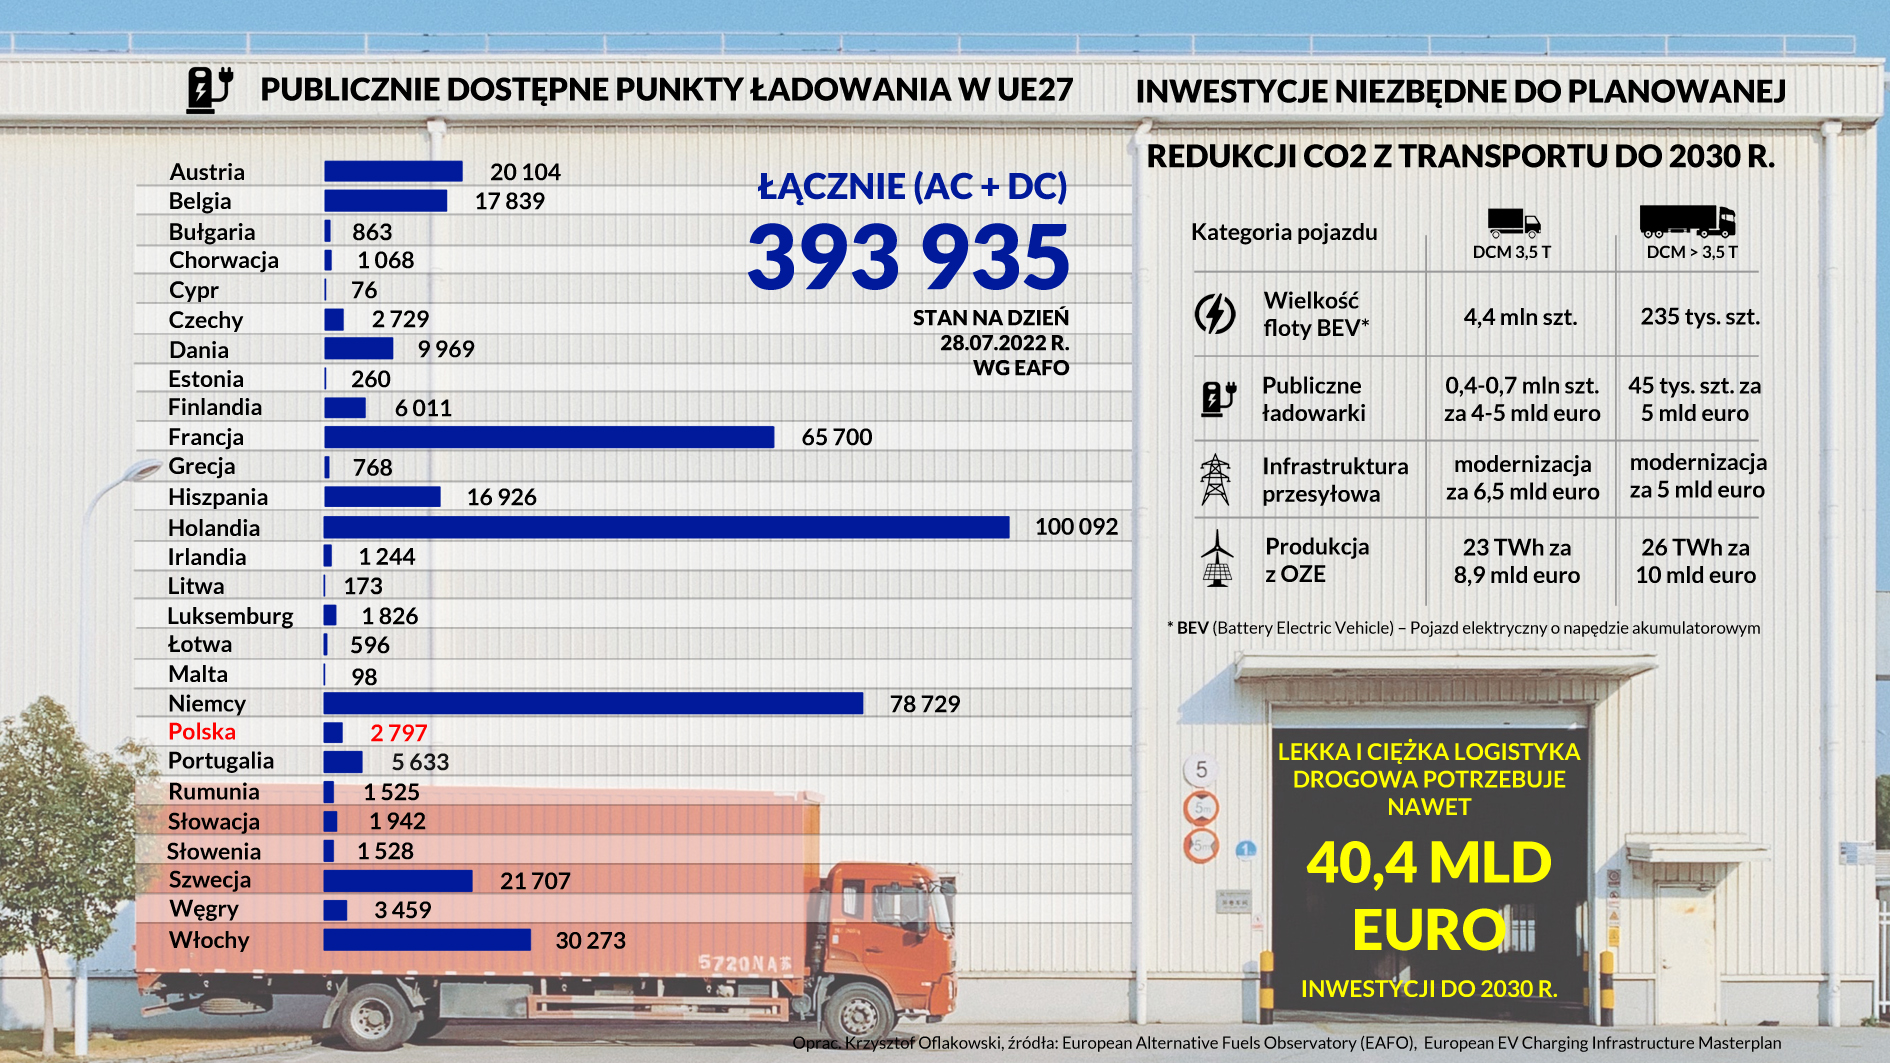 Logistyka drogowa publiczne punkty ładowania EU27 i niezbędne inwestycje w logistyce do 2030 r